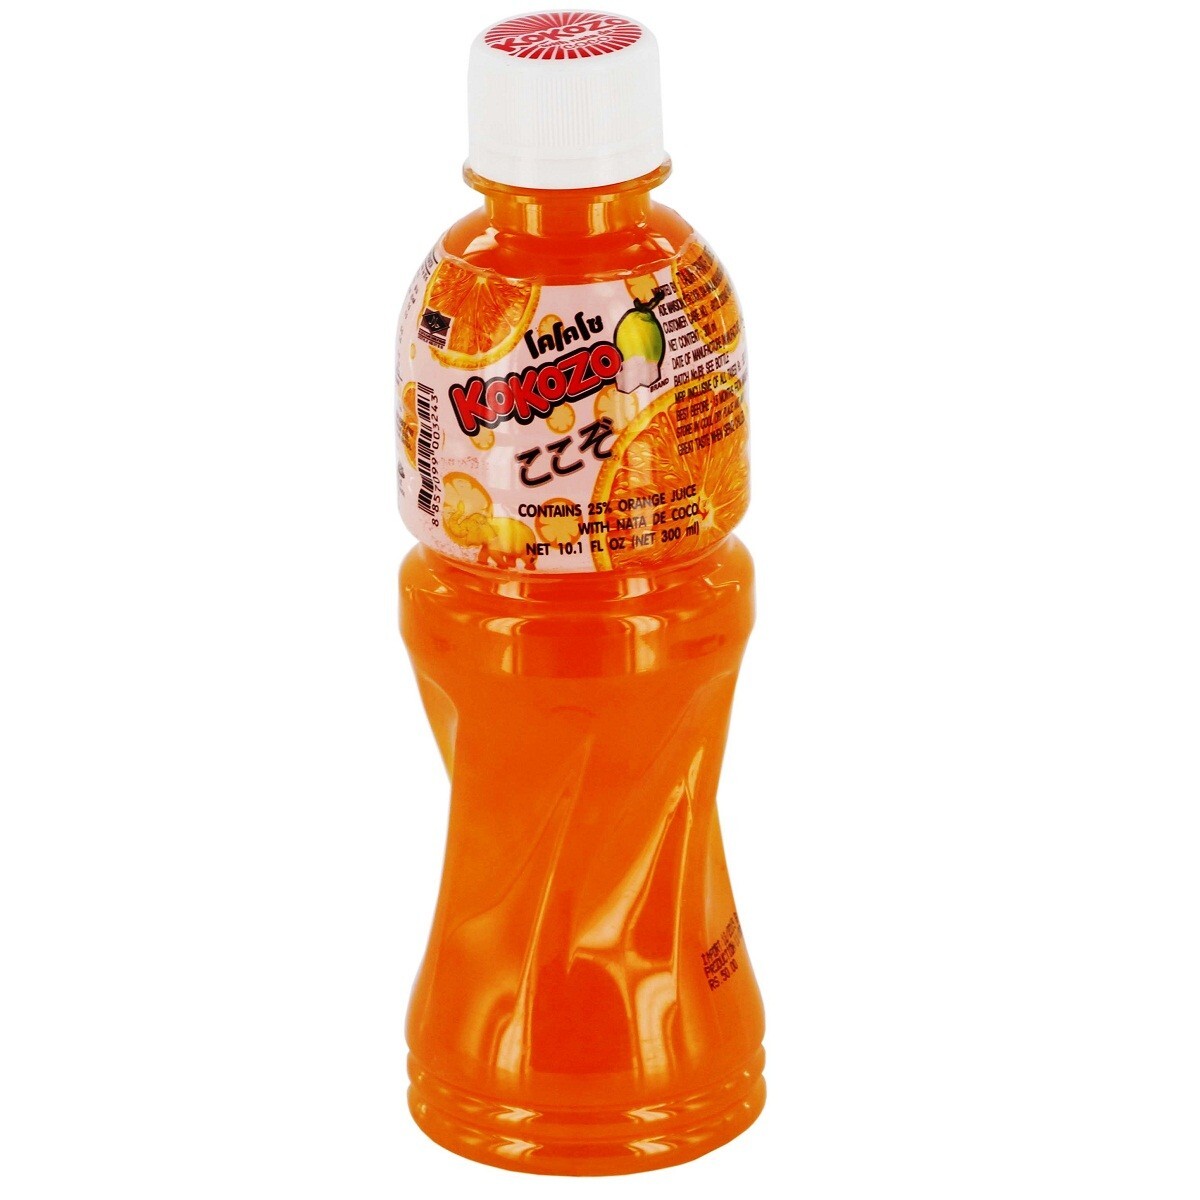 Kokozo-Orange juice Nata De Coco 320ml